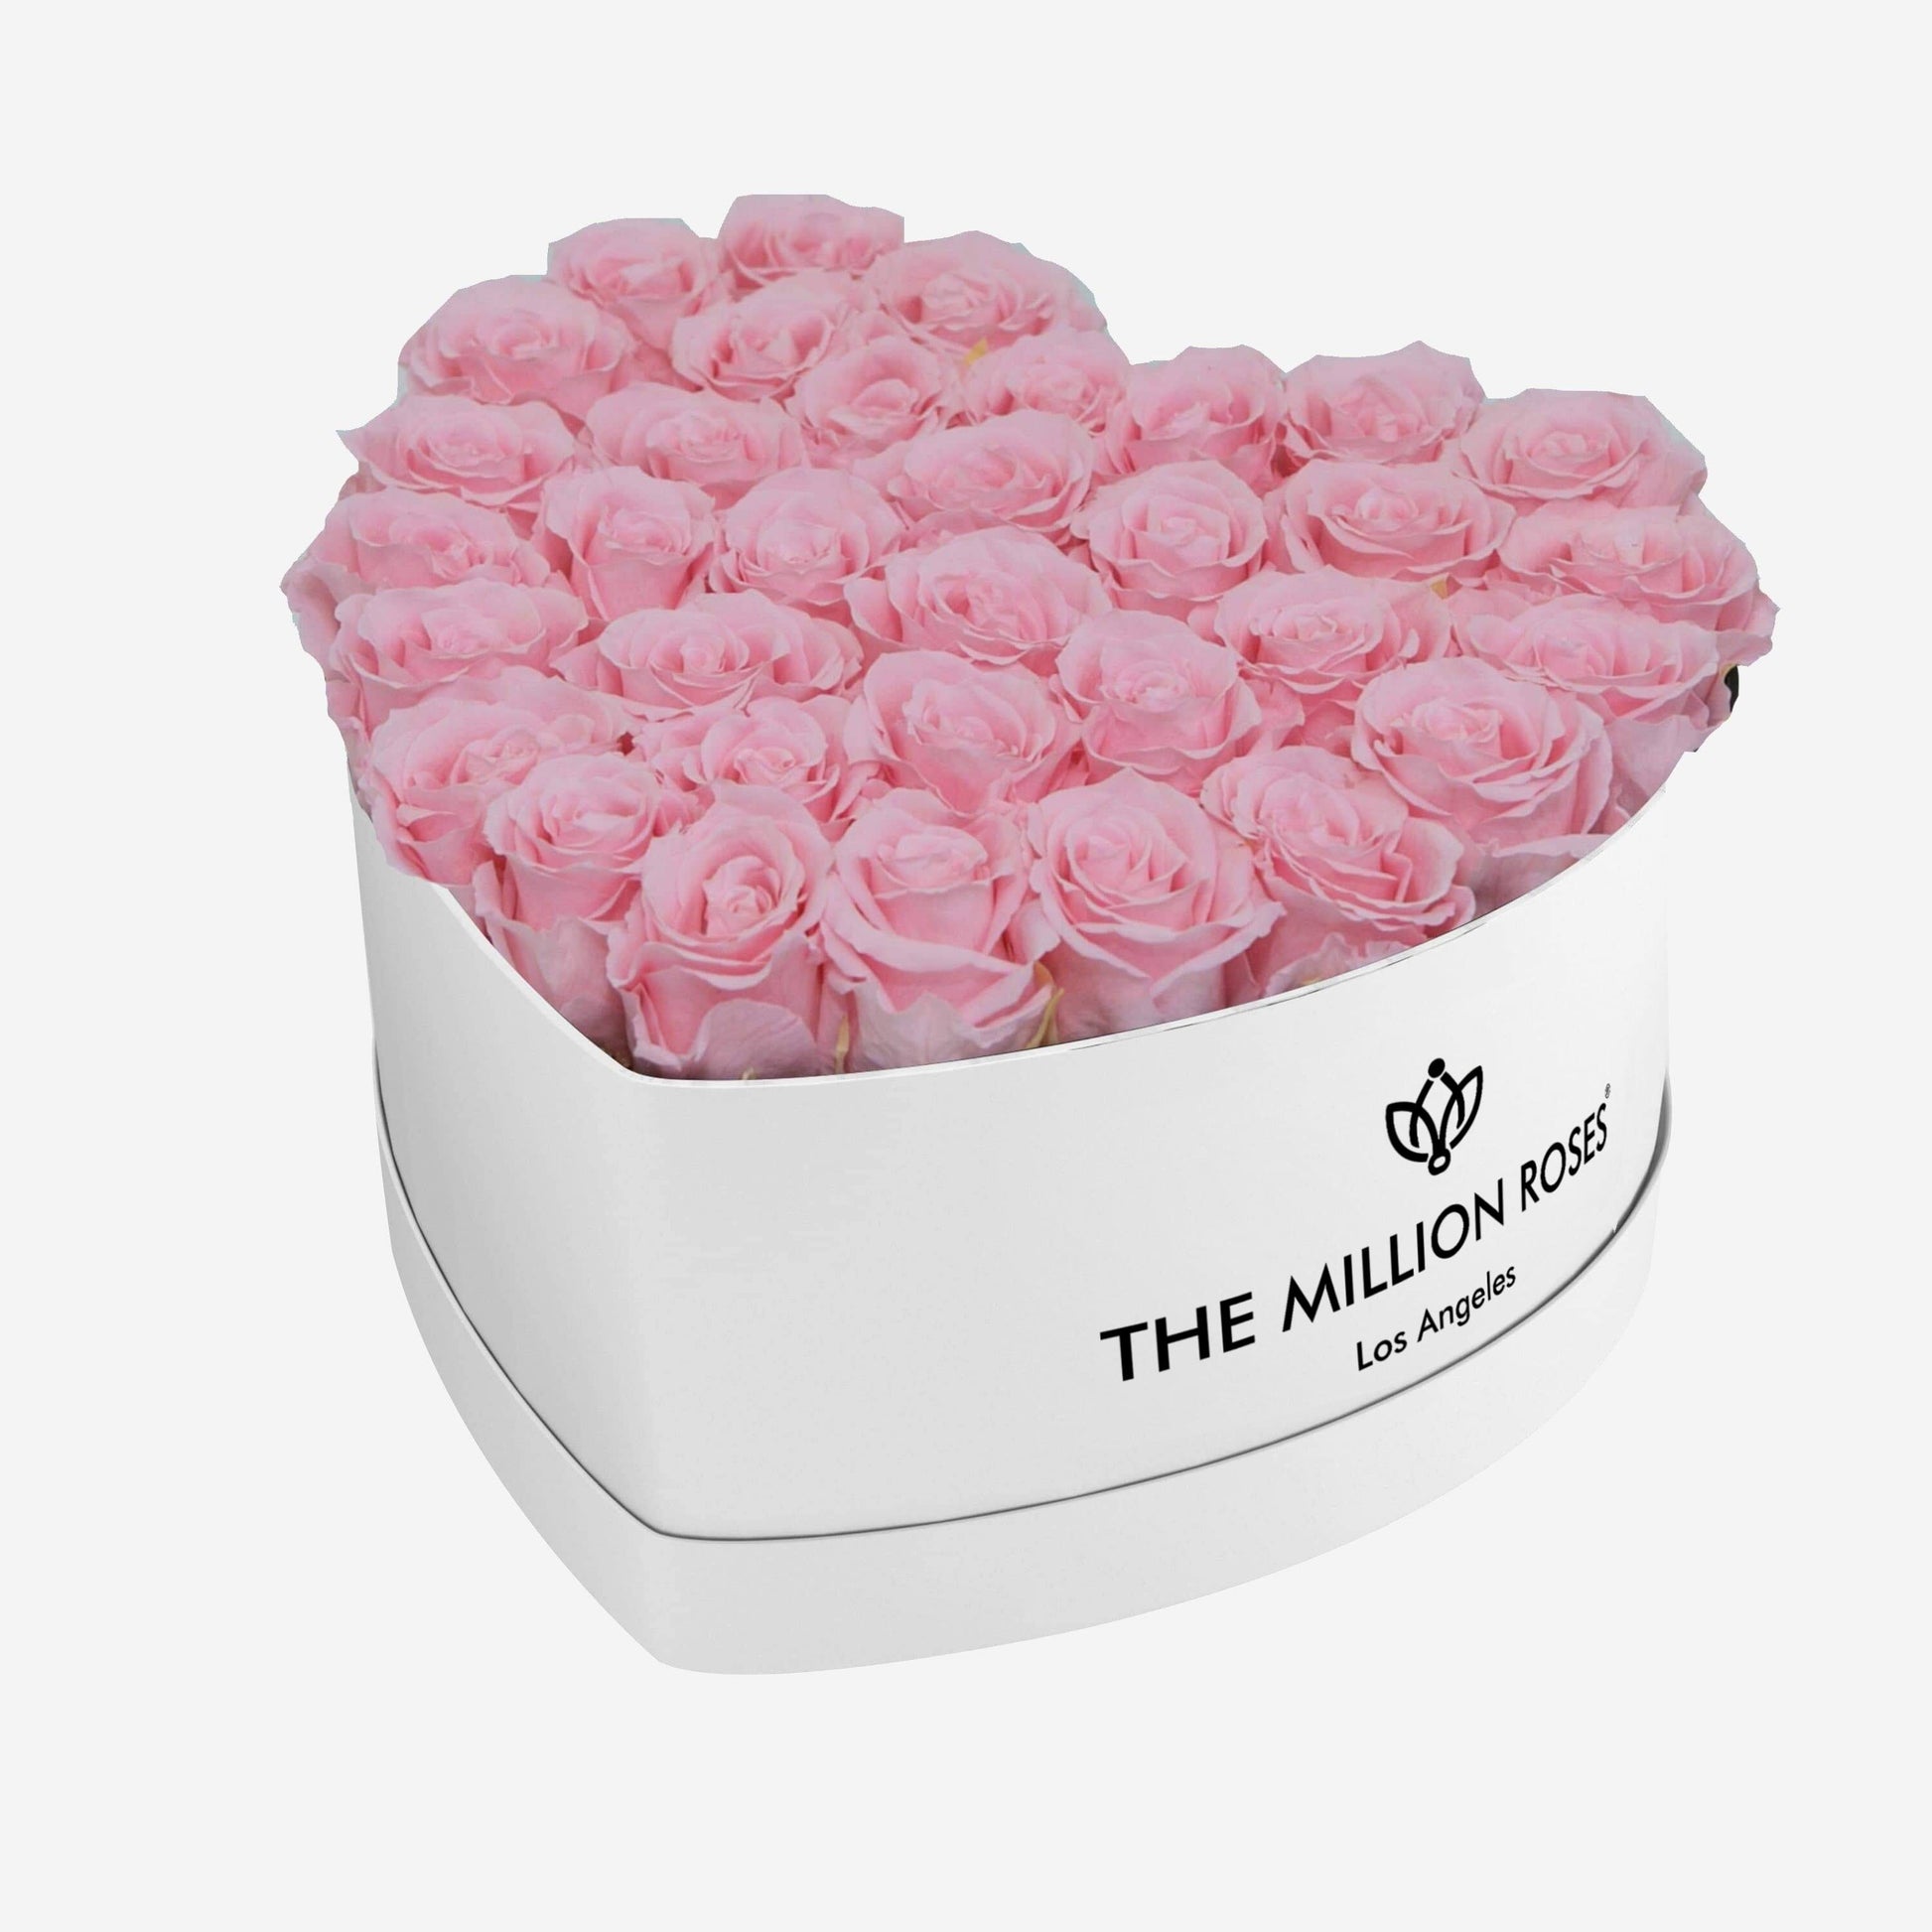 Heart White Box | Light Pink Roses - The Million Roses